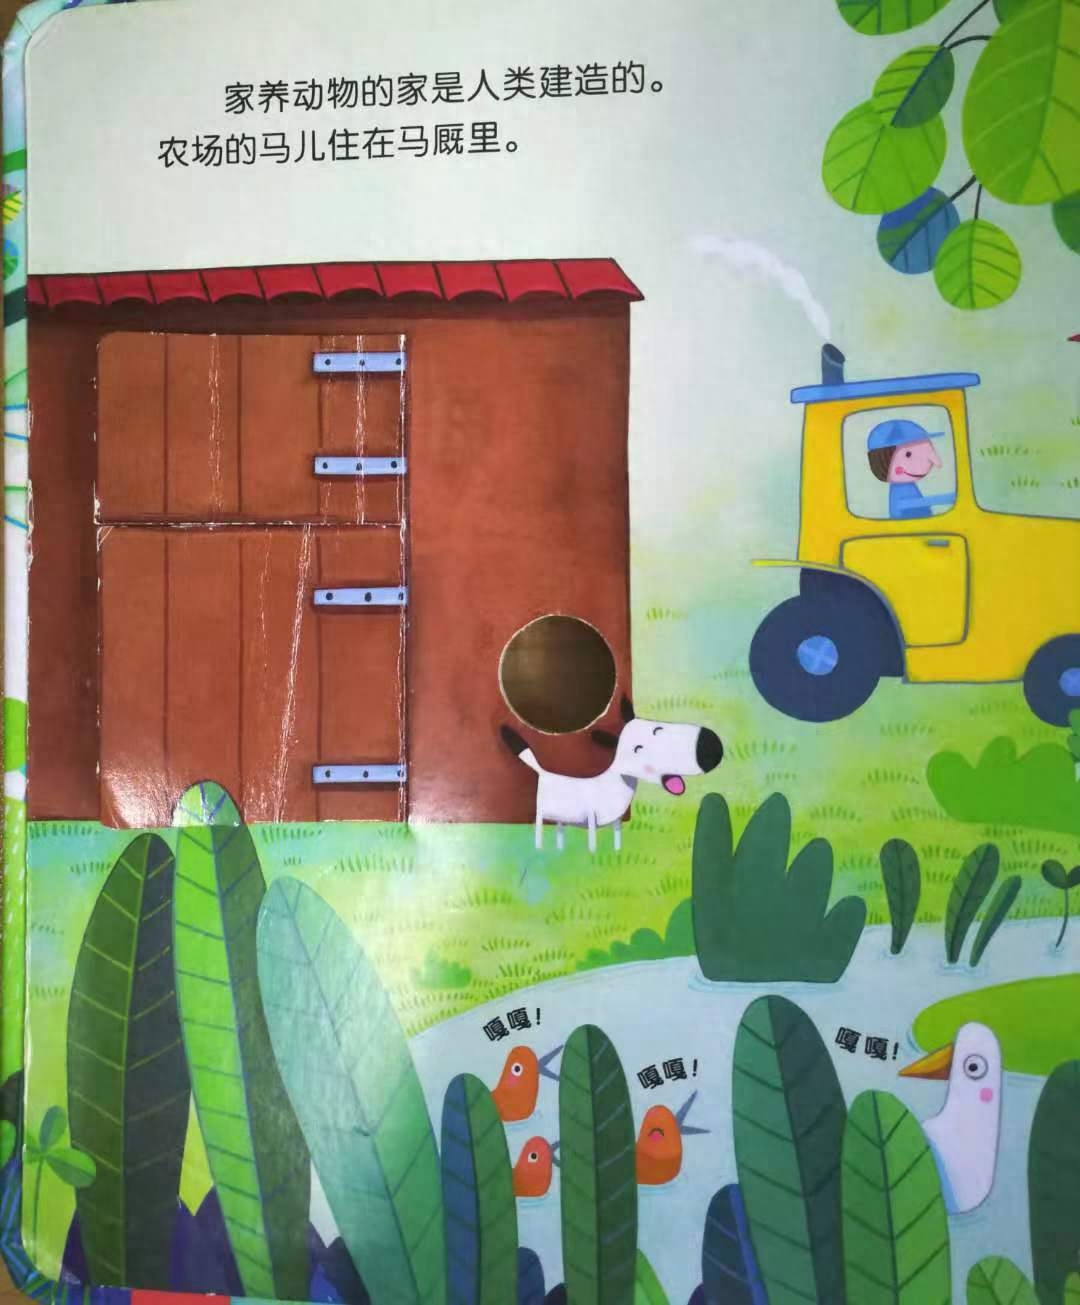 低幼绘本:《动物的家》，让孩子懂得动物们的家在哪里